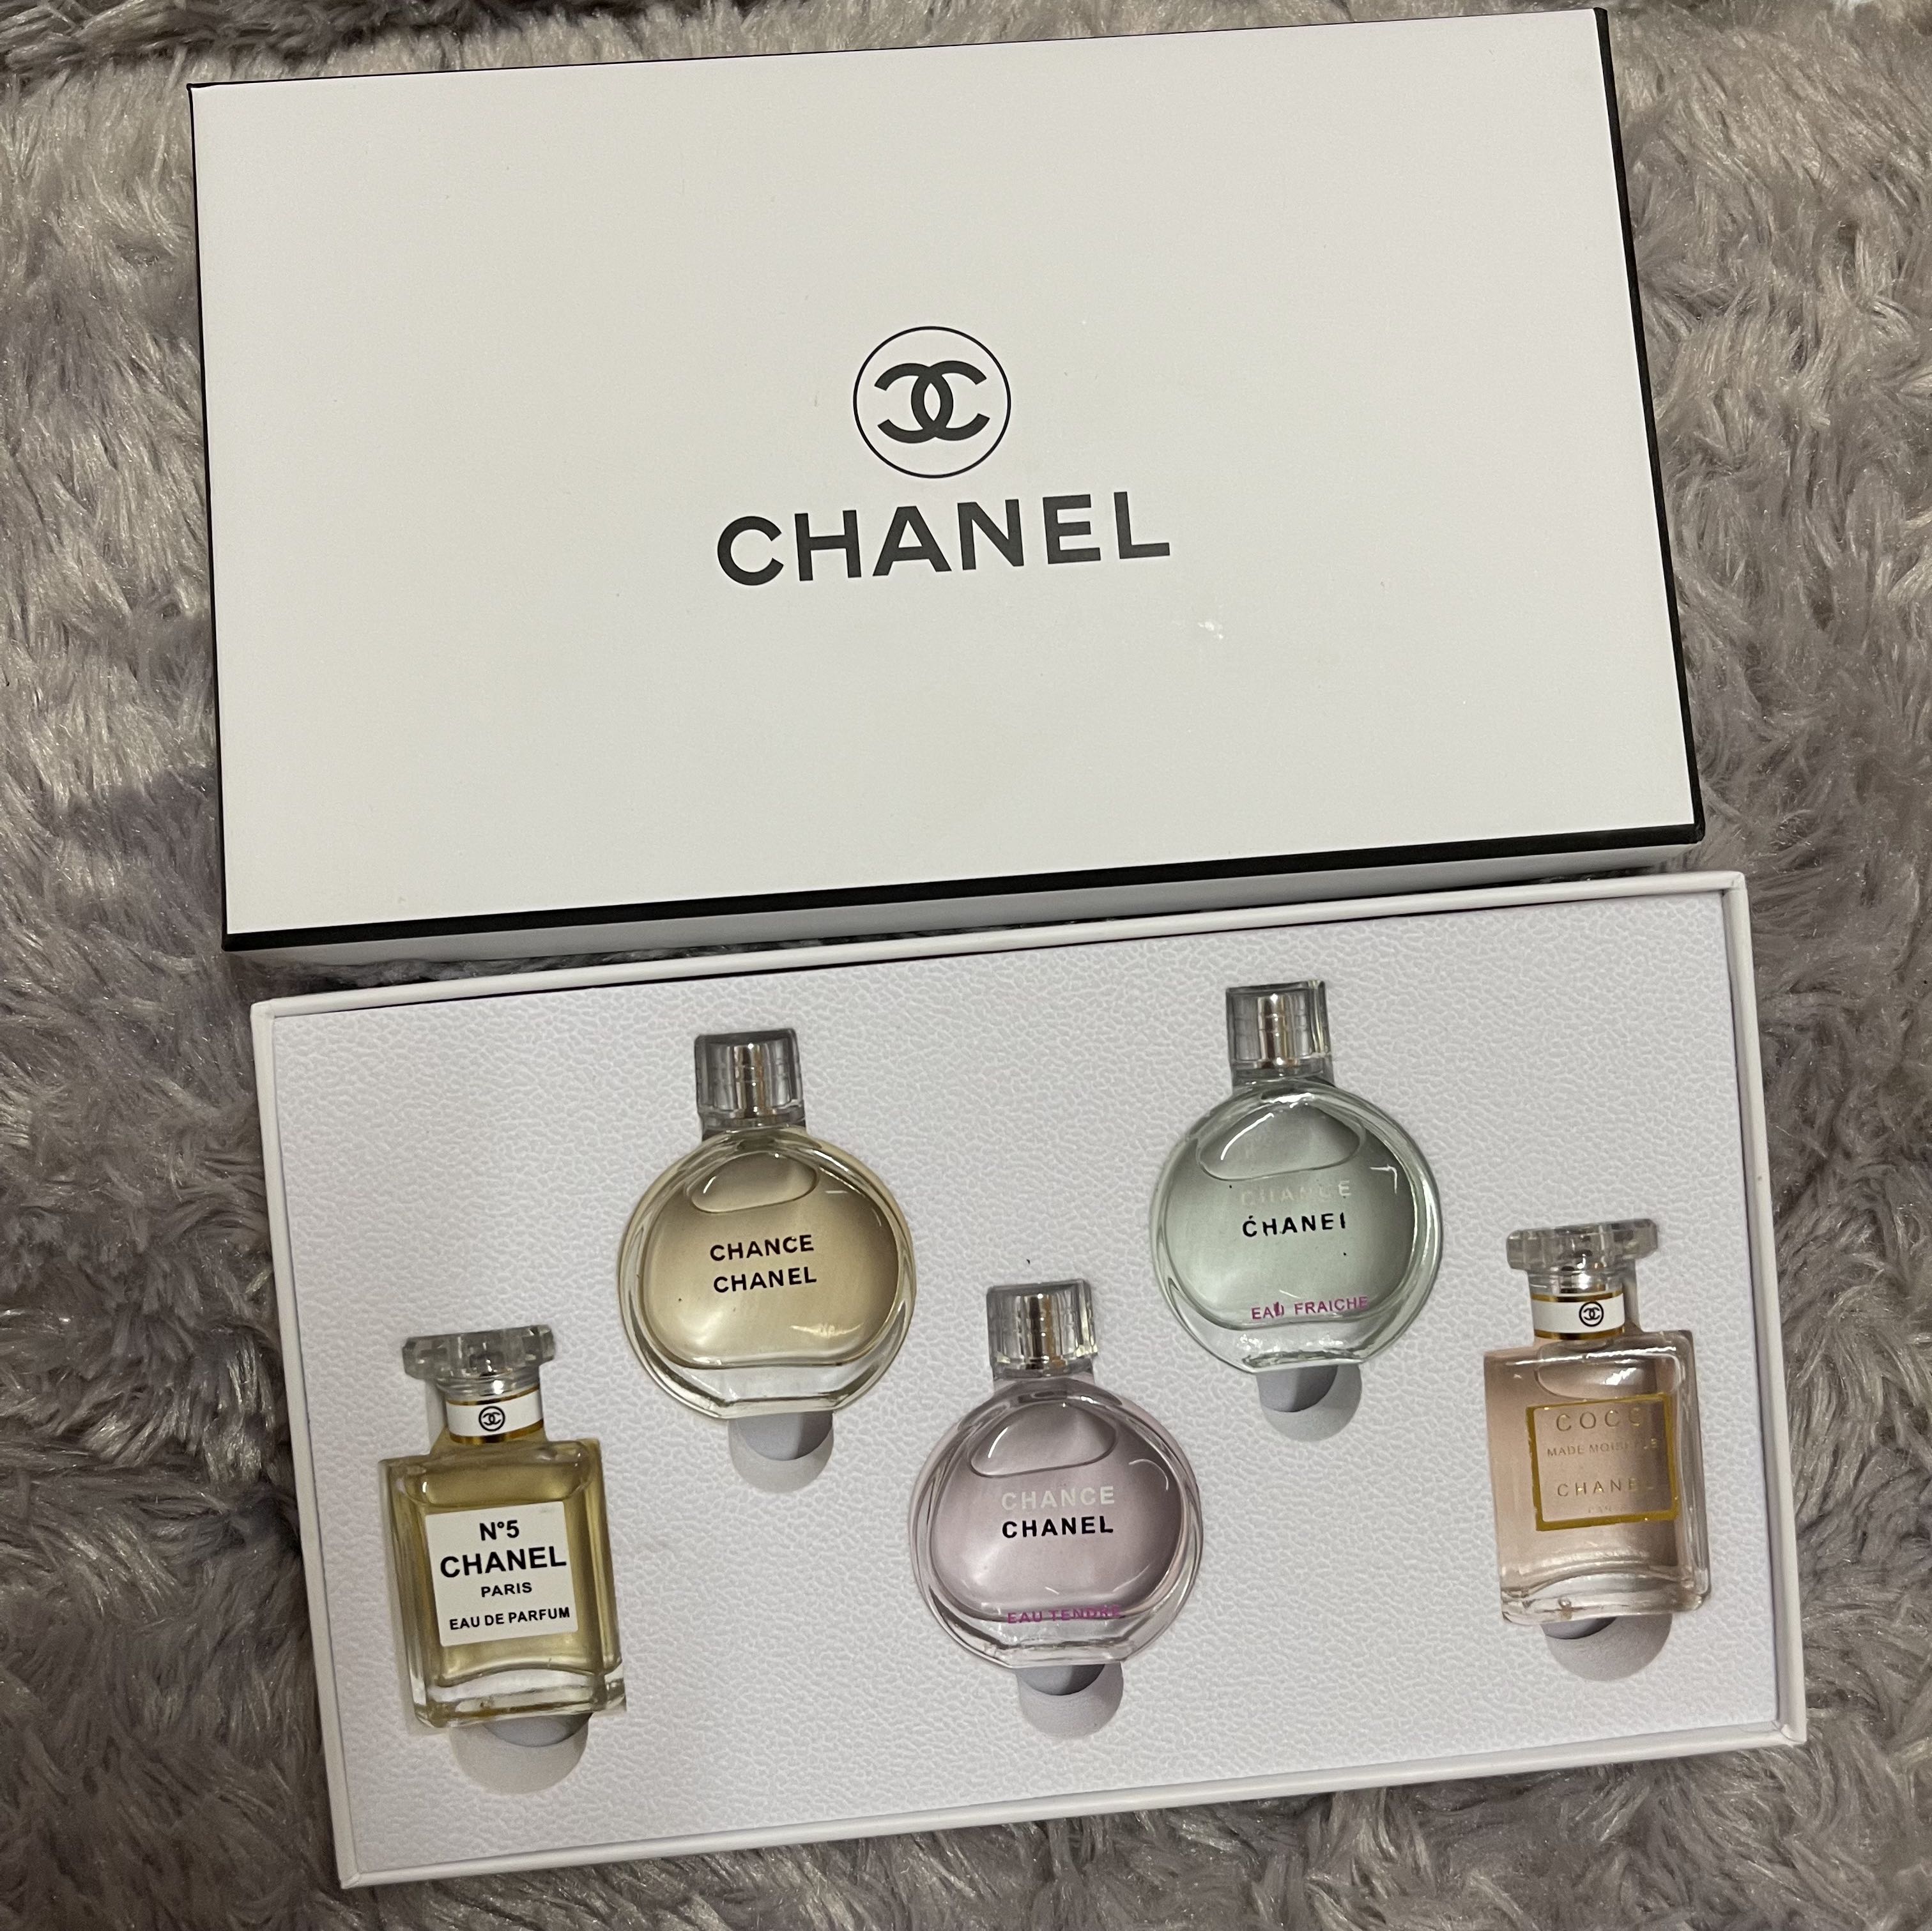 chanel perfume and makeup sets